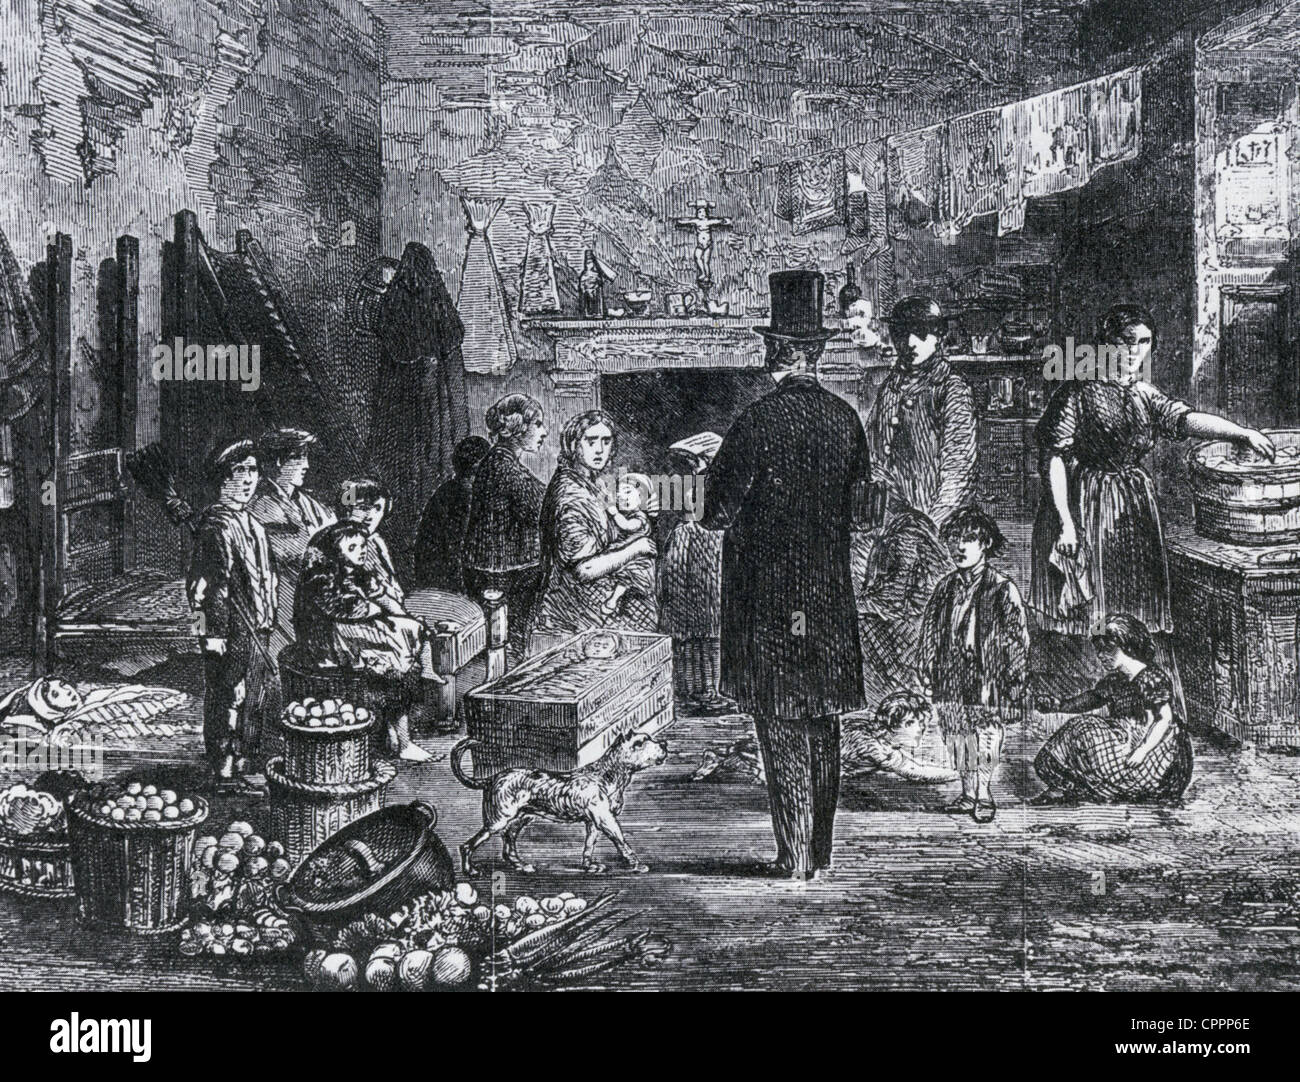 El enumerador del censo en una barriada de Londres como se muestra en el Illustrated Times, 7 de abril de 1861 Foto de stock